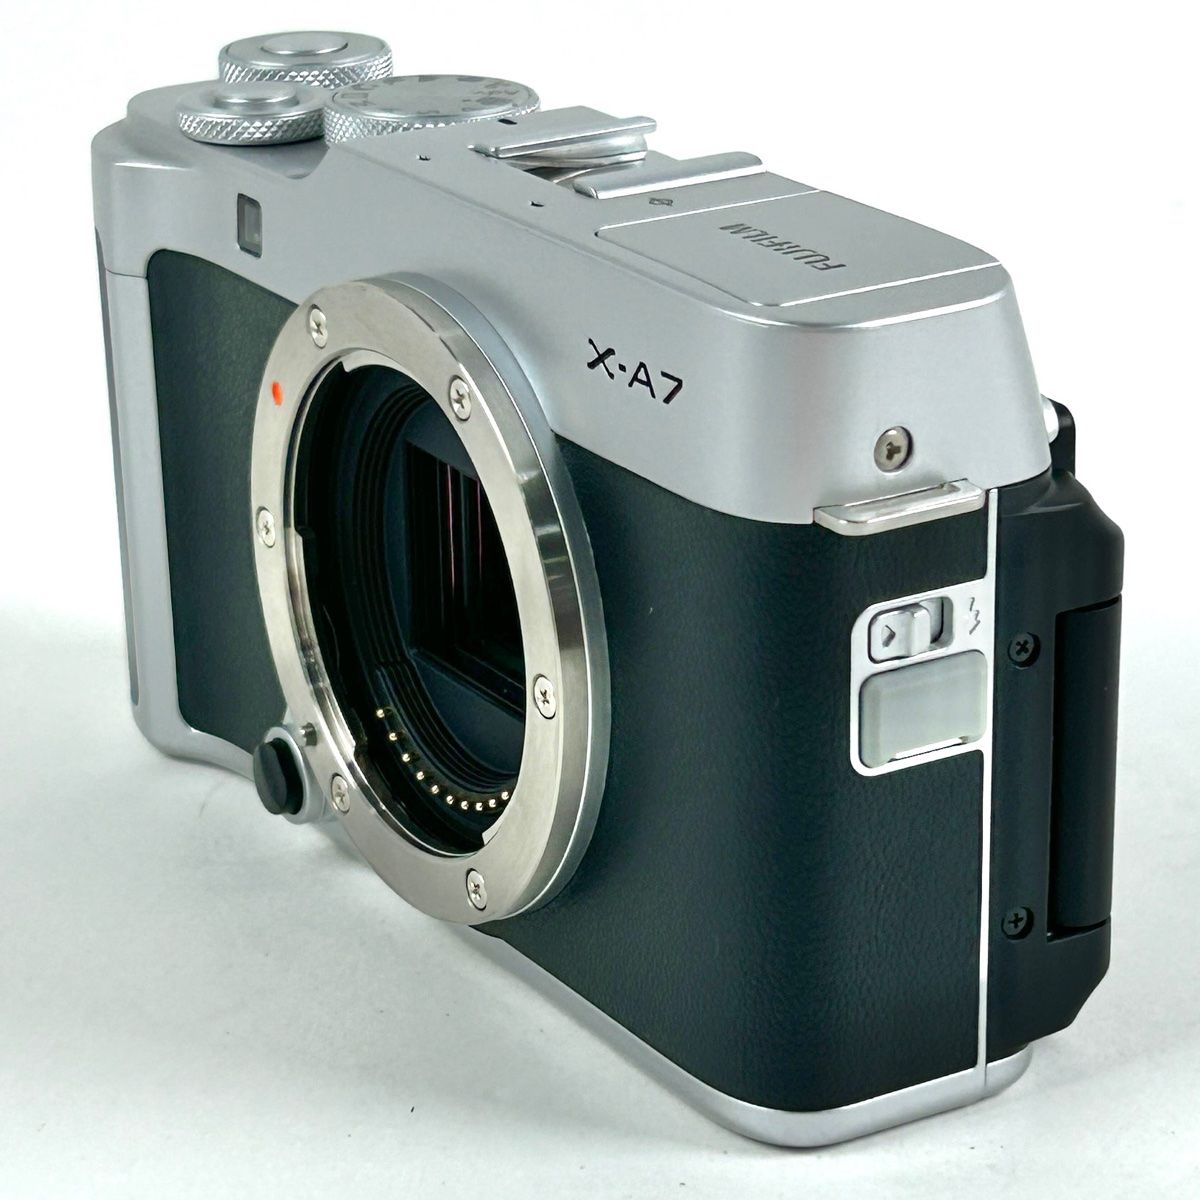 富士フイルム FUJIFILM X-A7 ボディ シルバー デジタル ミラーレス 一眼カメラ 【中古】 - メルカリ